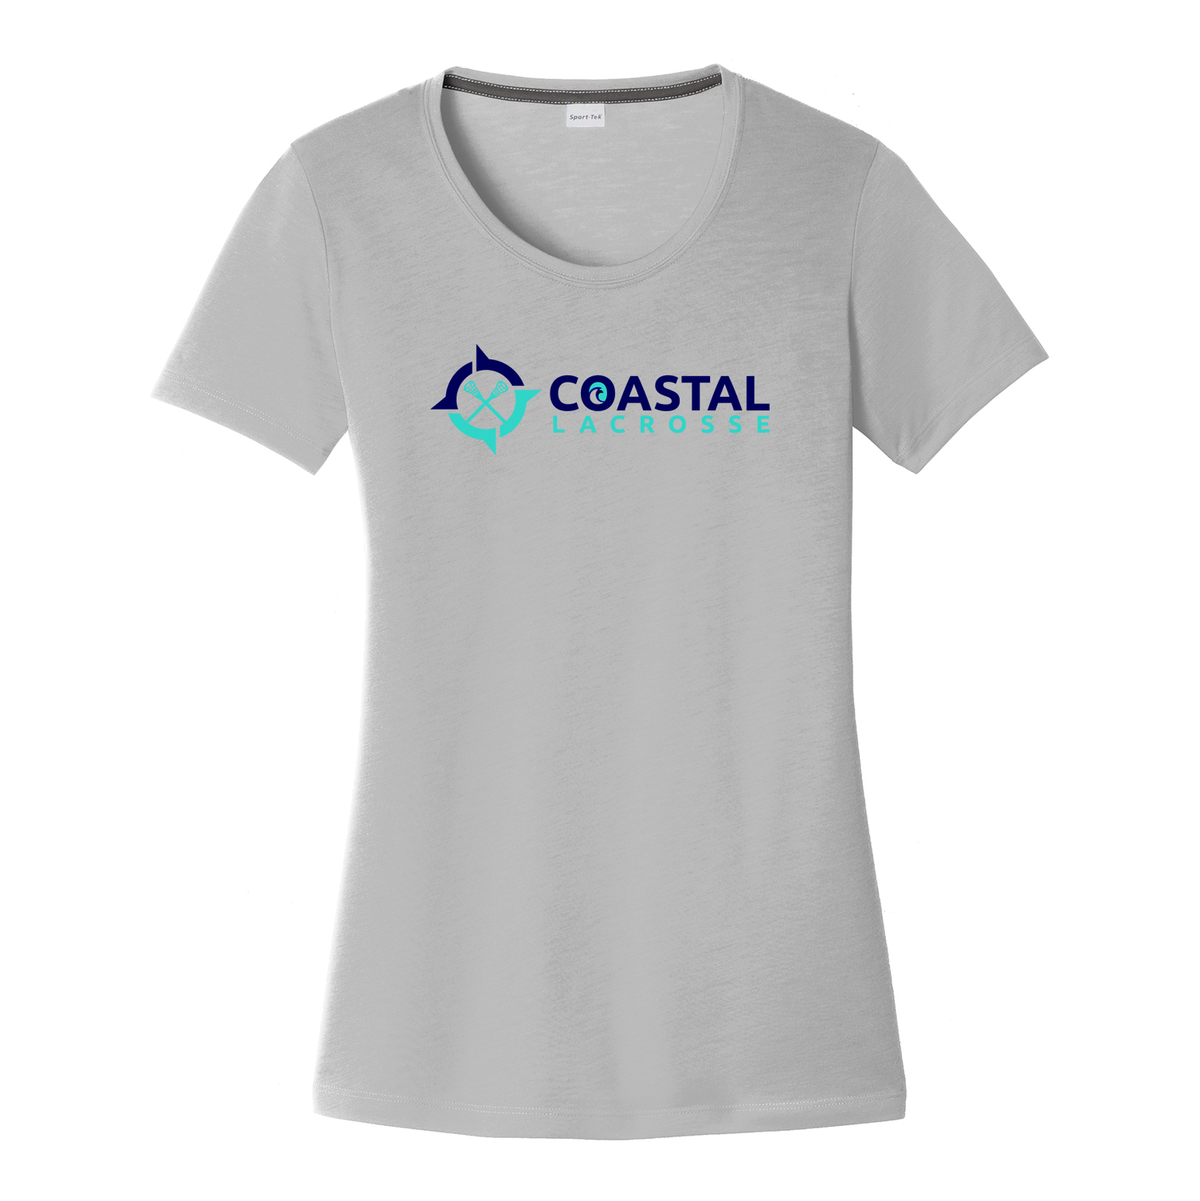 Coastal Lacrosse Women's CottonTouch Performance T-Shirt